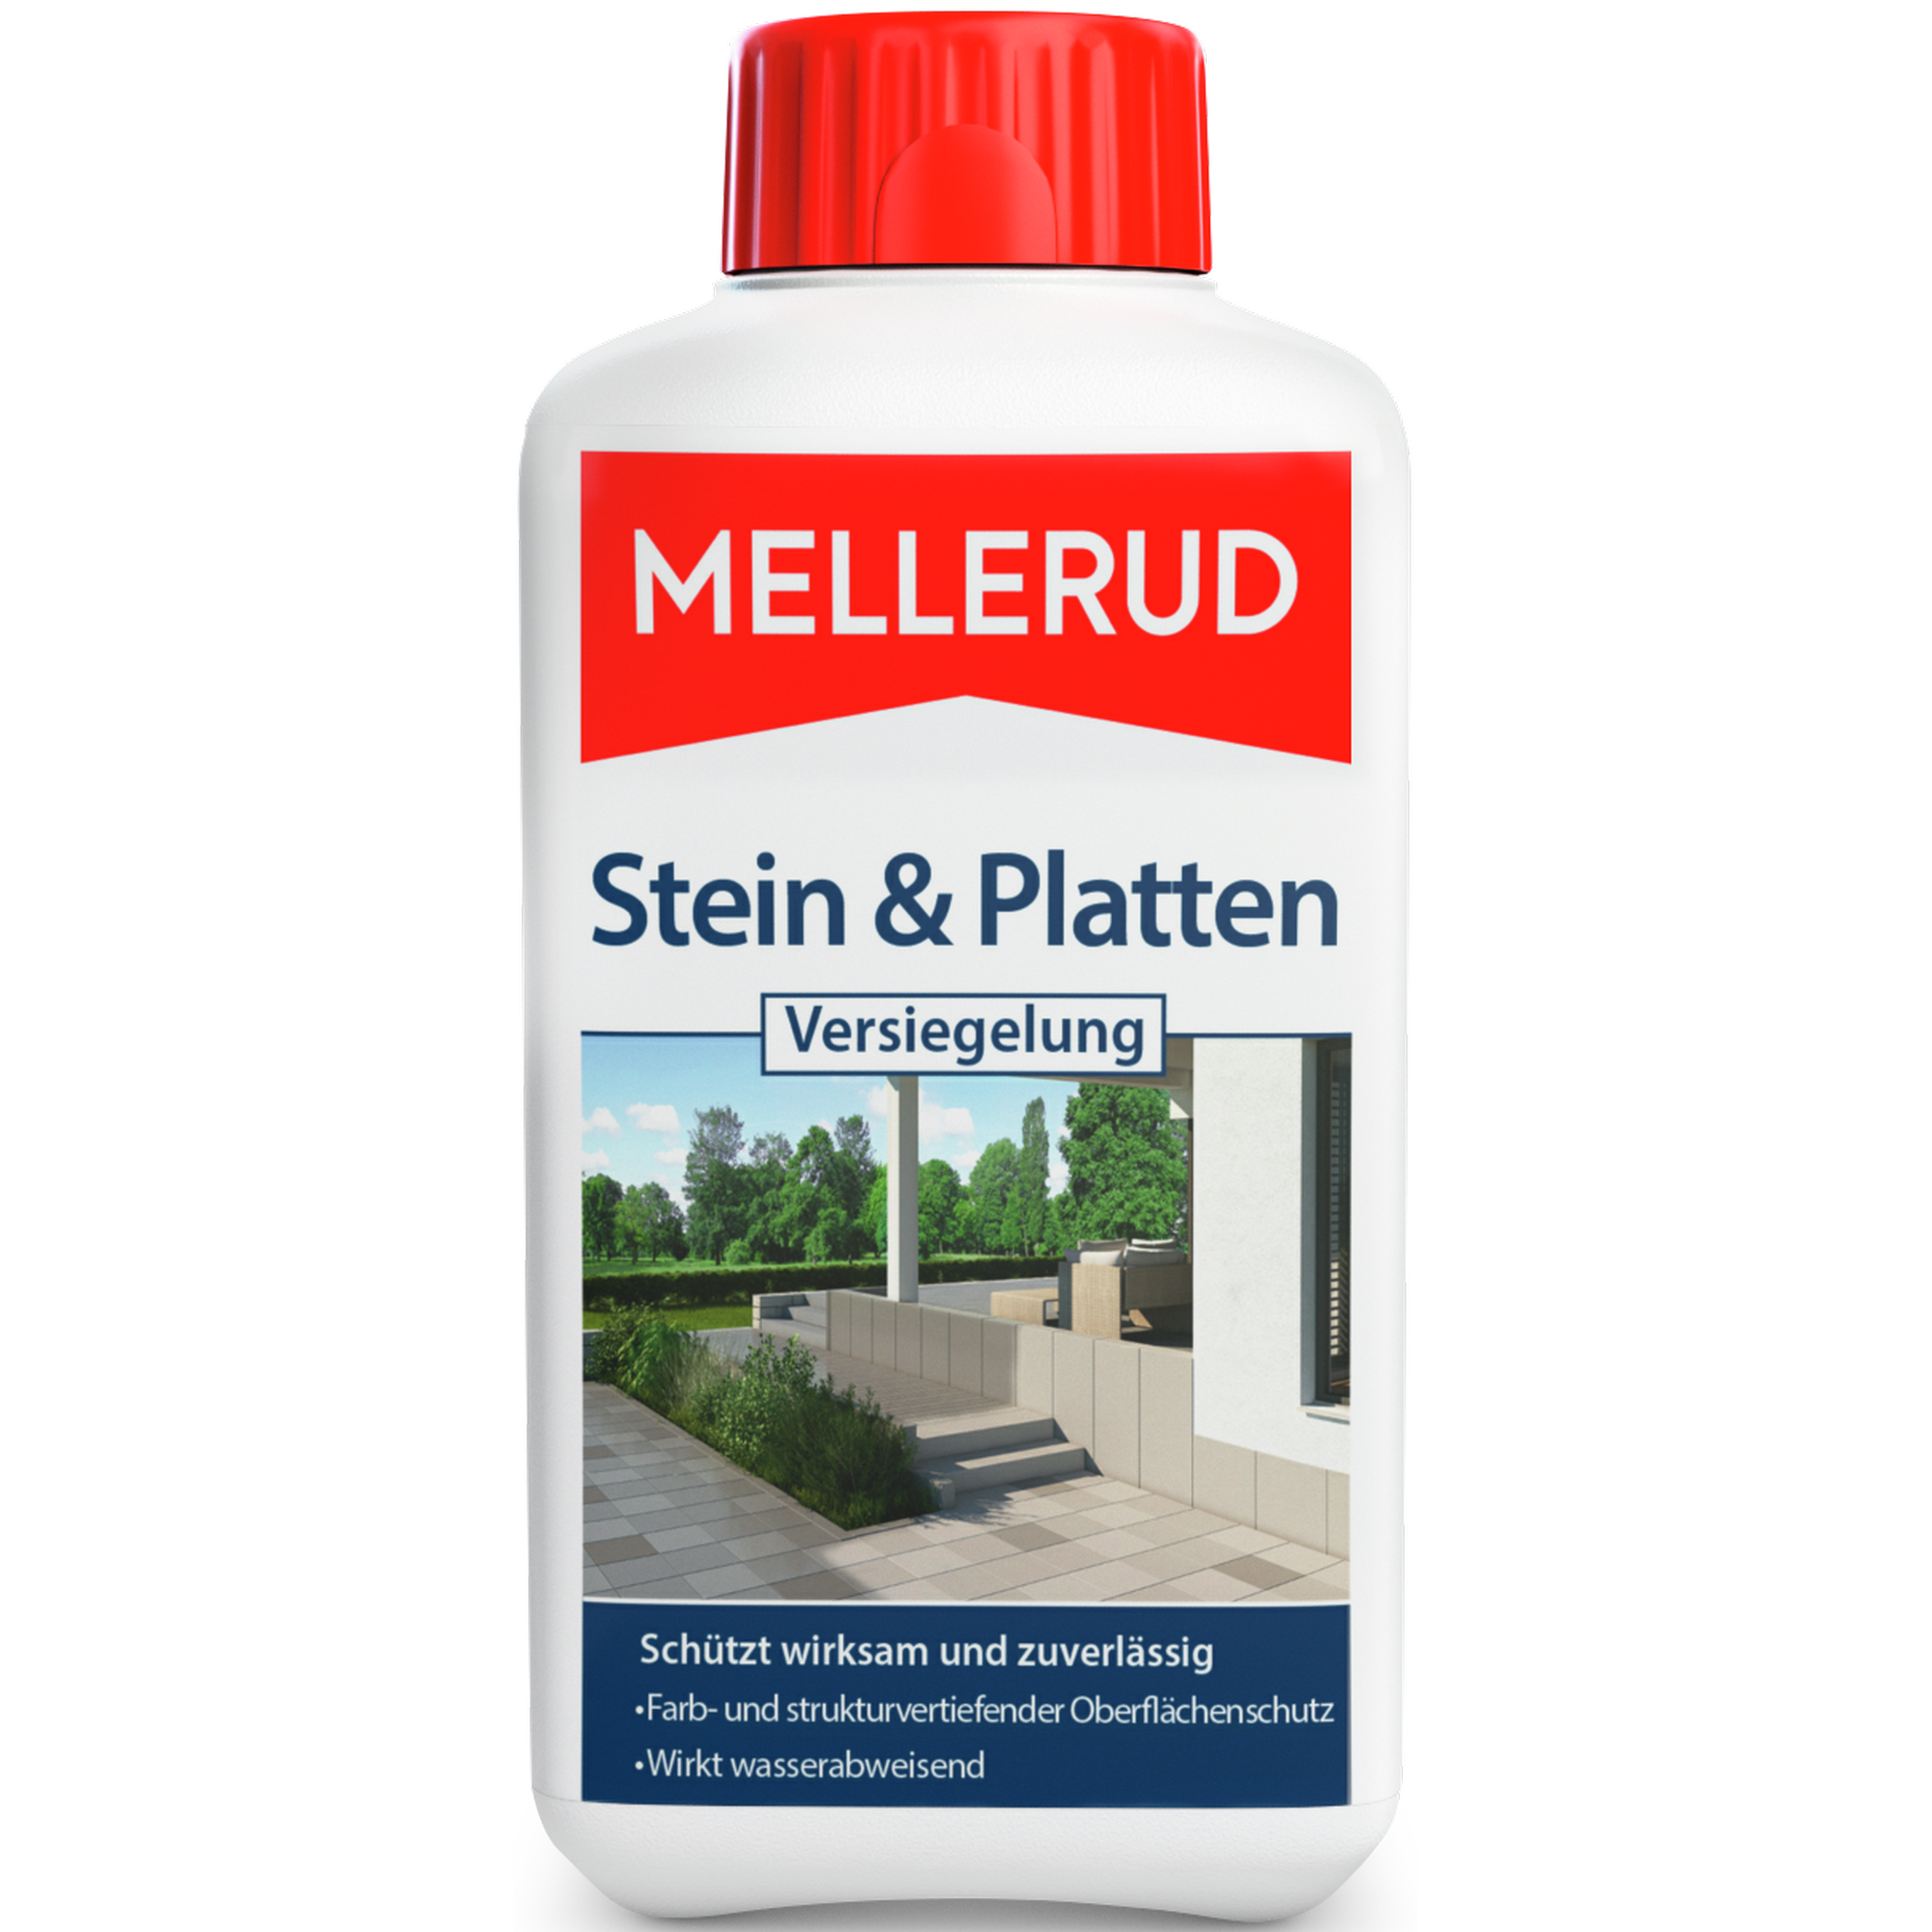 Versiegelung 'Stein & Platten' 0,5 Liter + product picture